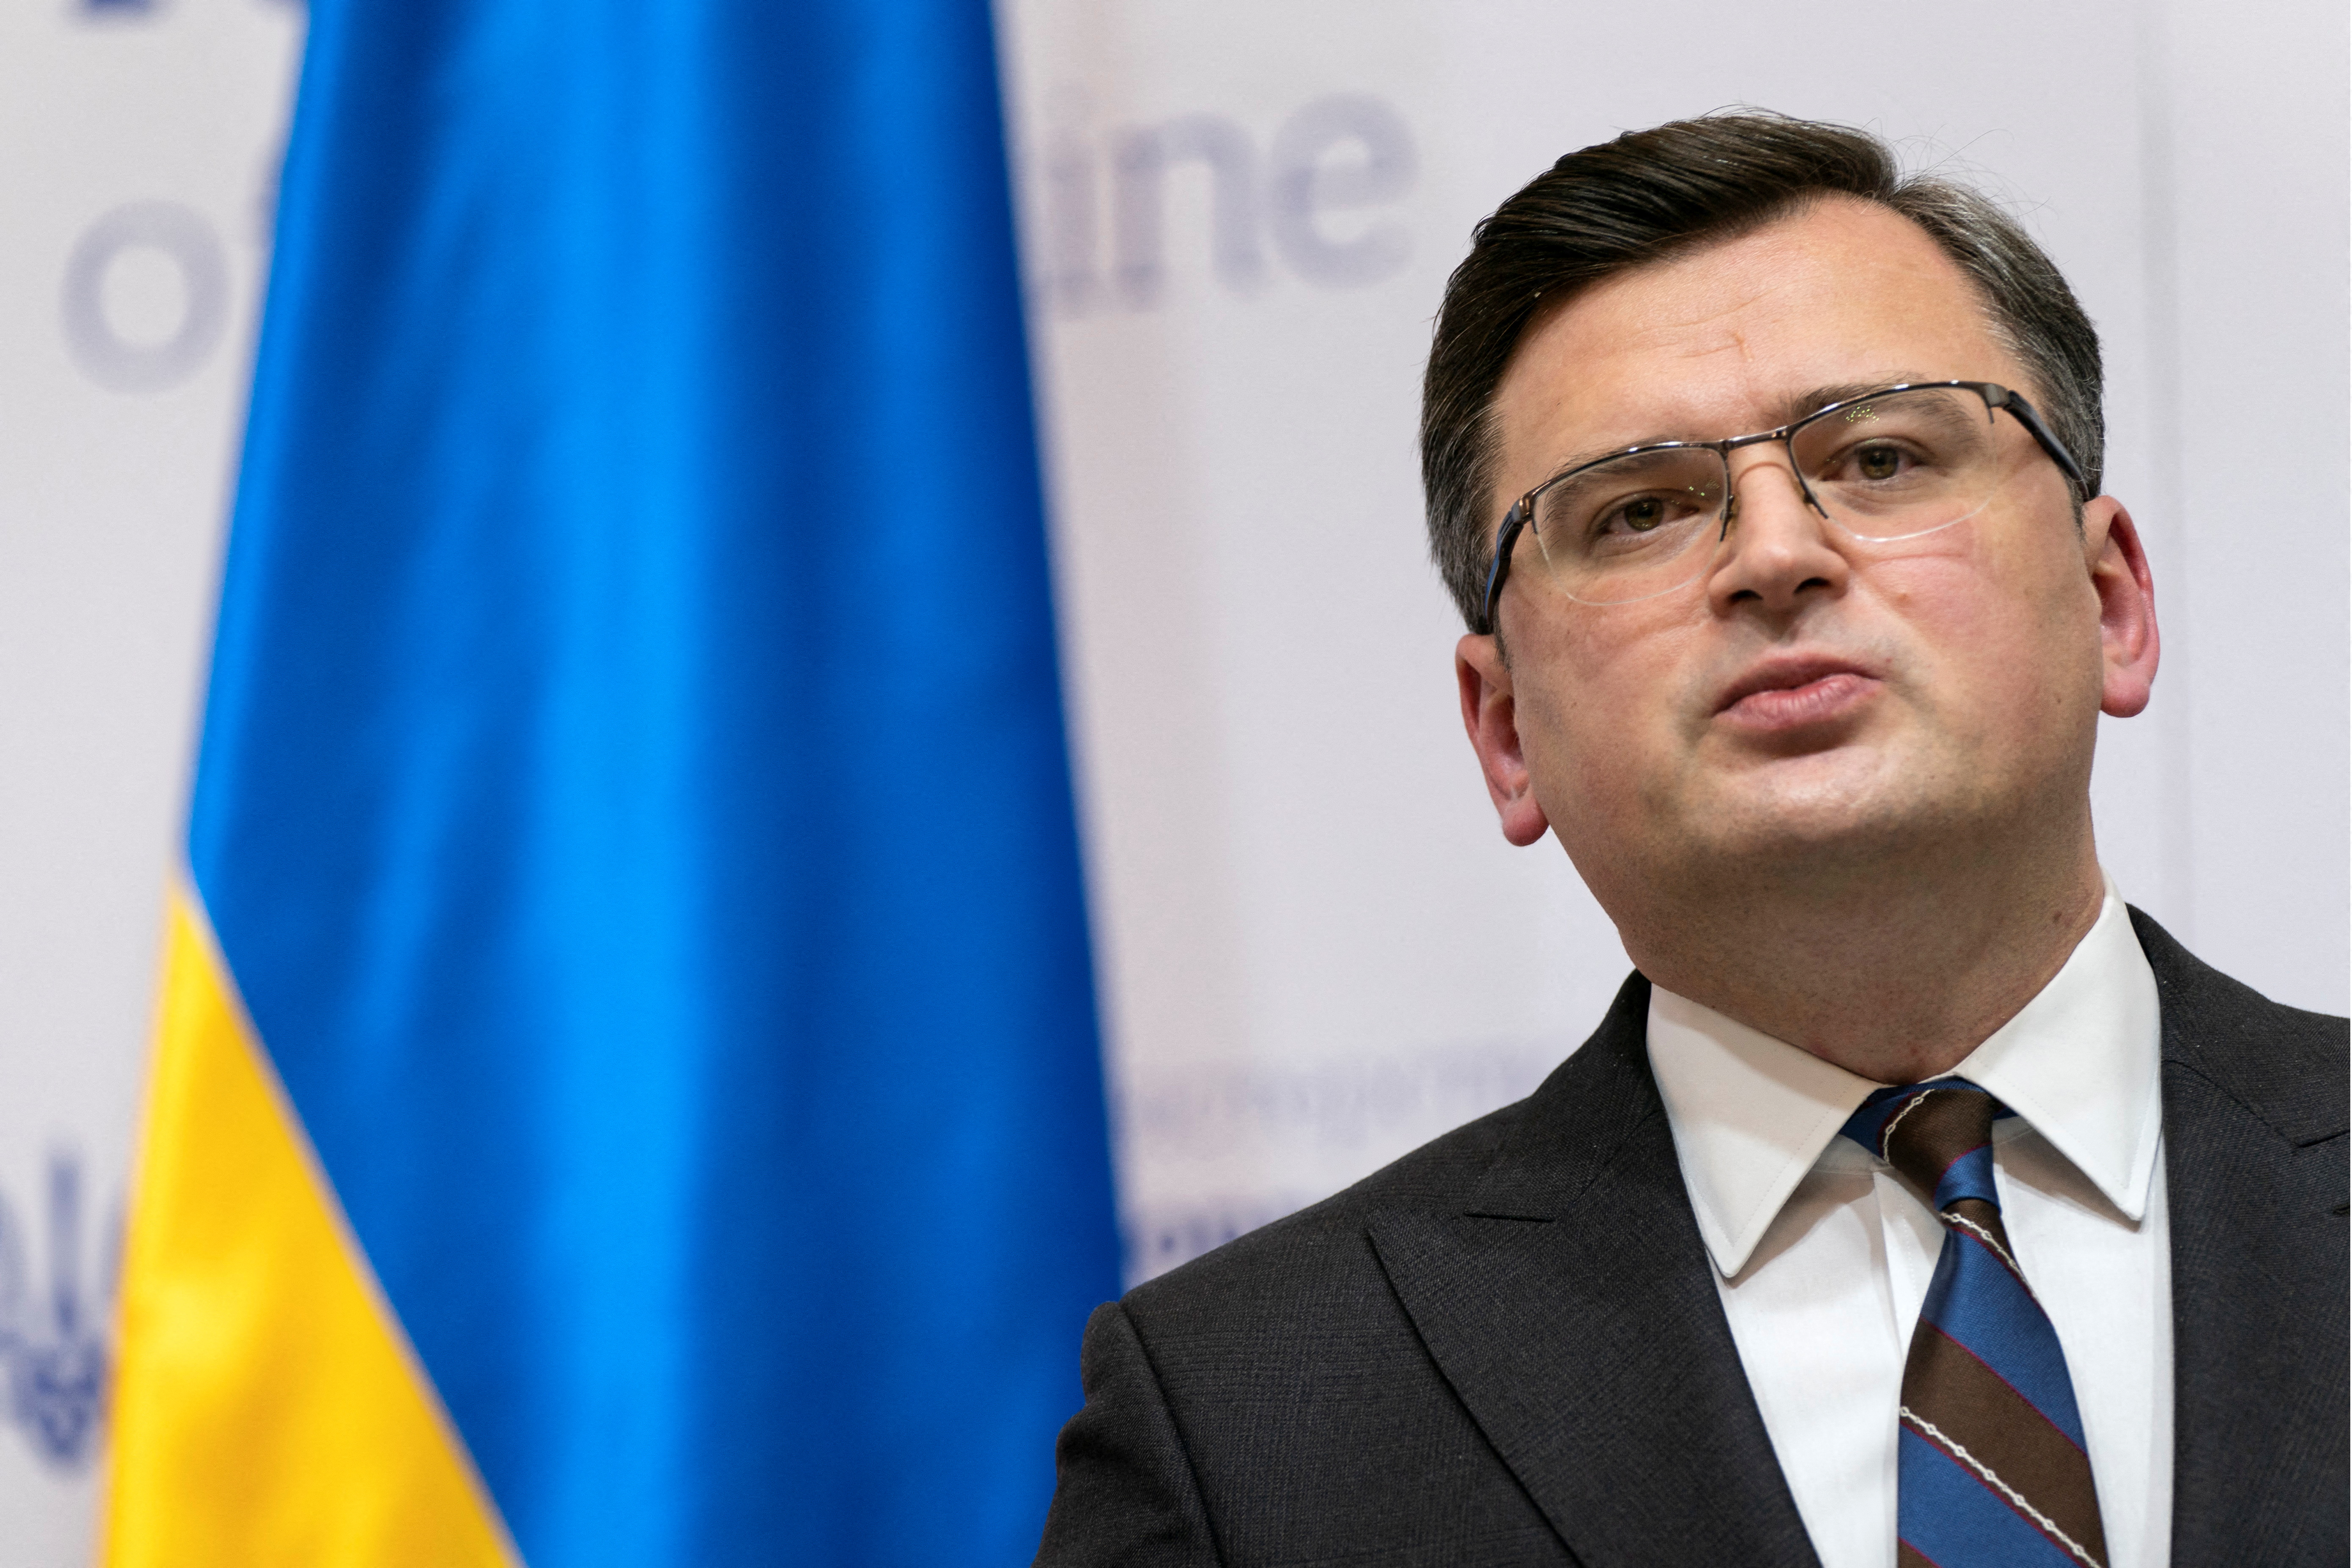 U.S. Secretary of State Blinken meets with Ukrainian FM Kuleba in Kyiv